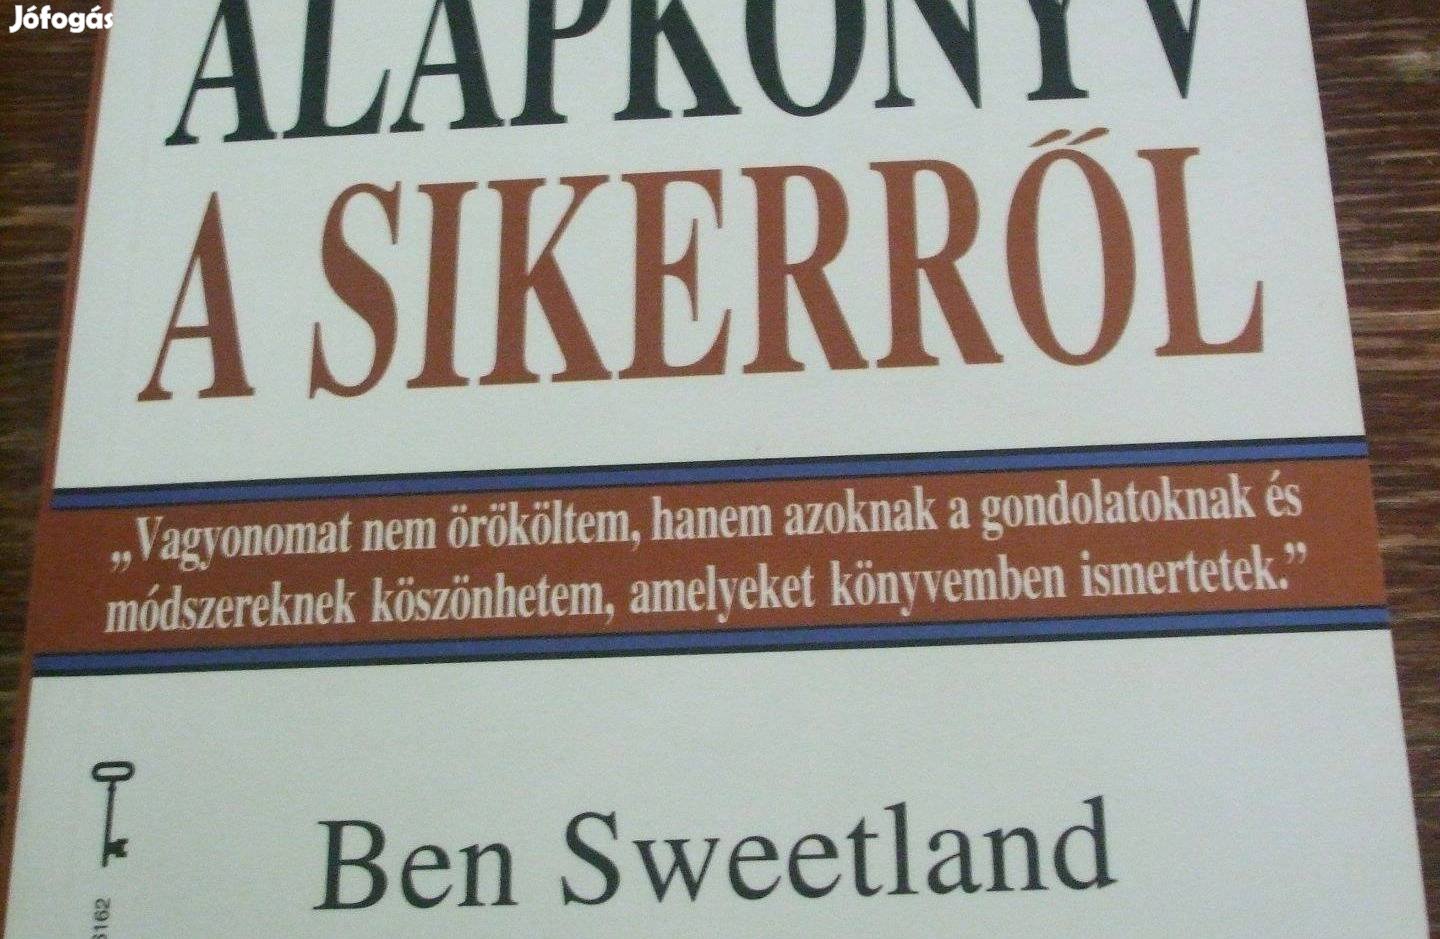 Alapkönyv a sikerről Ben Sweetland